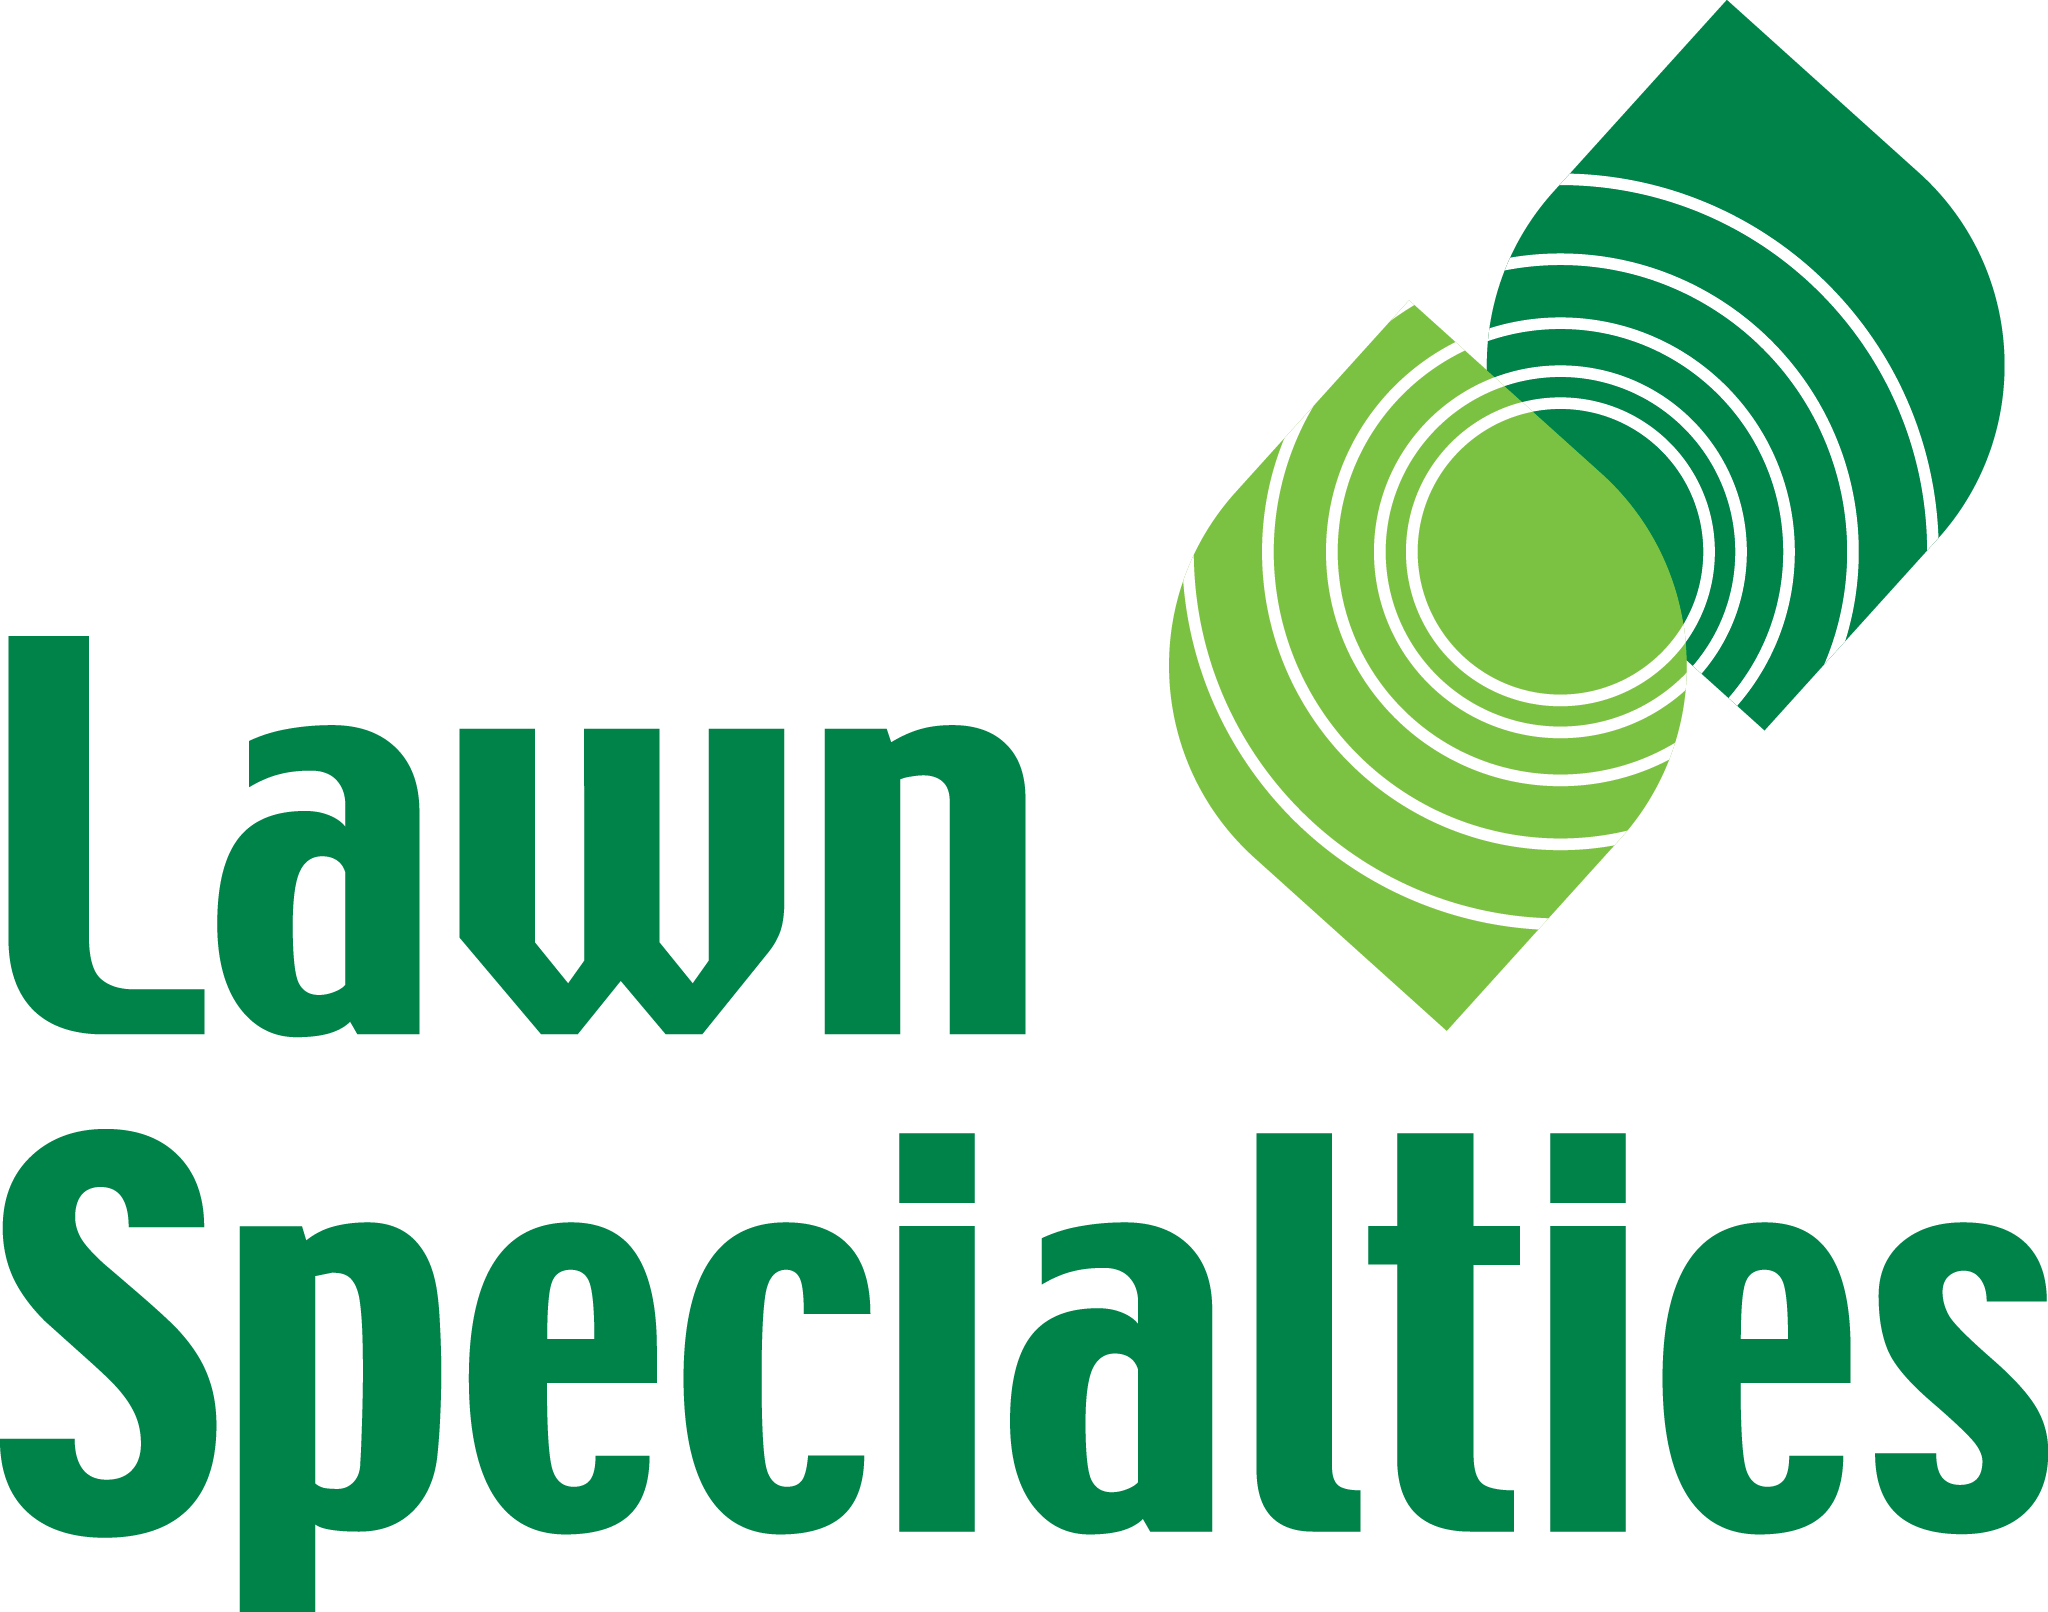 Lawn Specialties